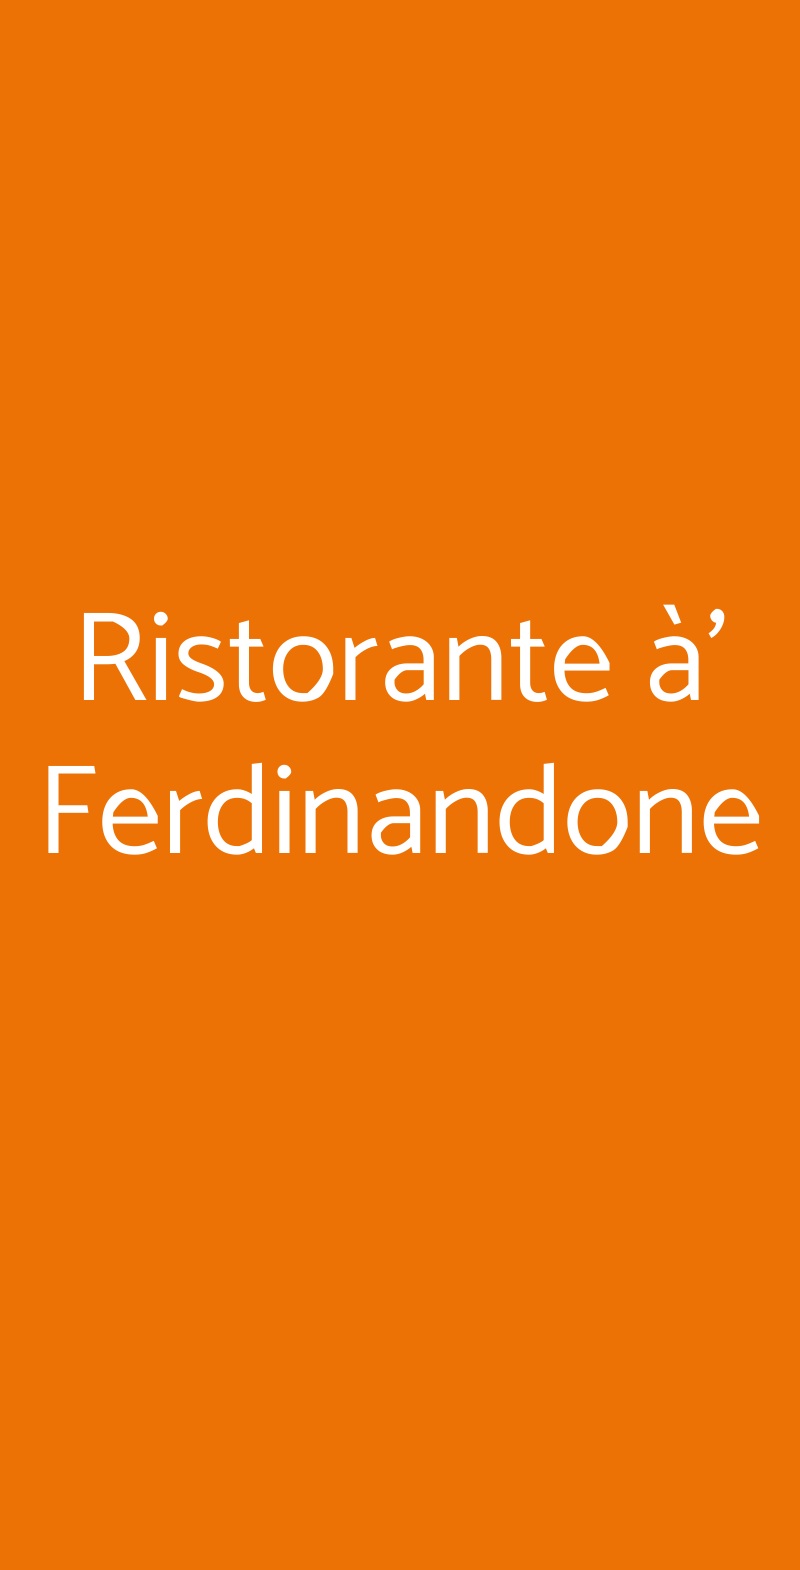 Ristorante à’ Ferdinandone Gragnano menù 1 pagina